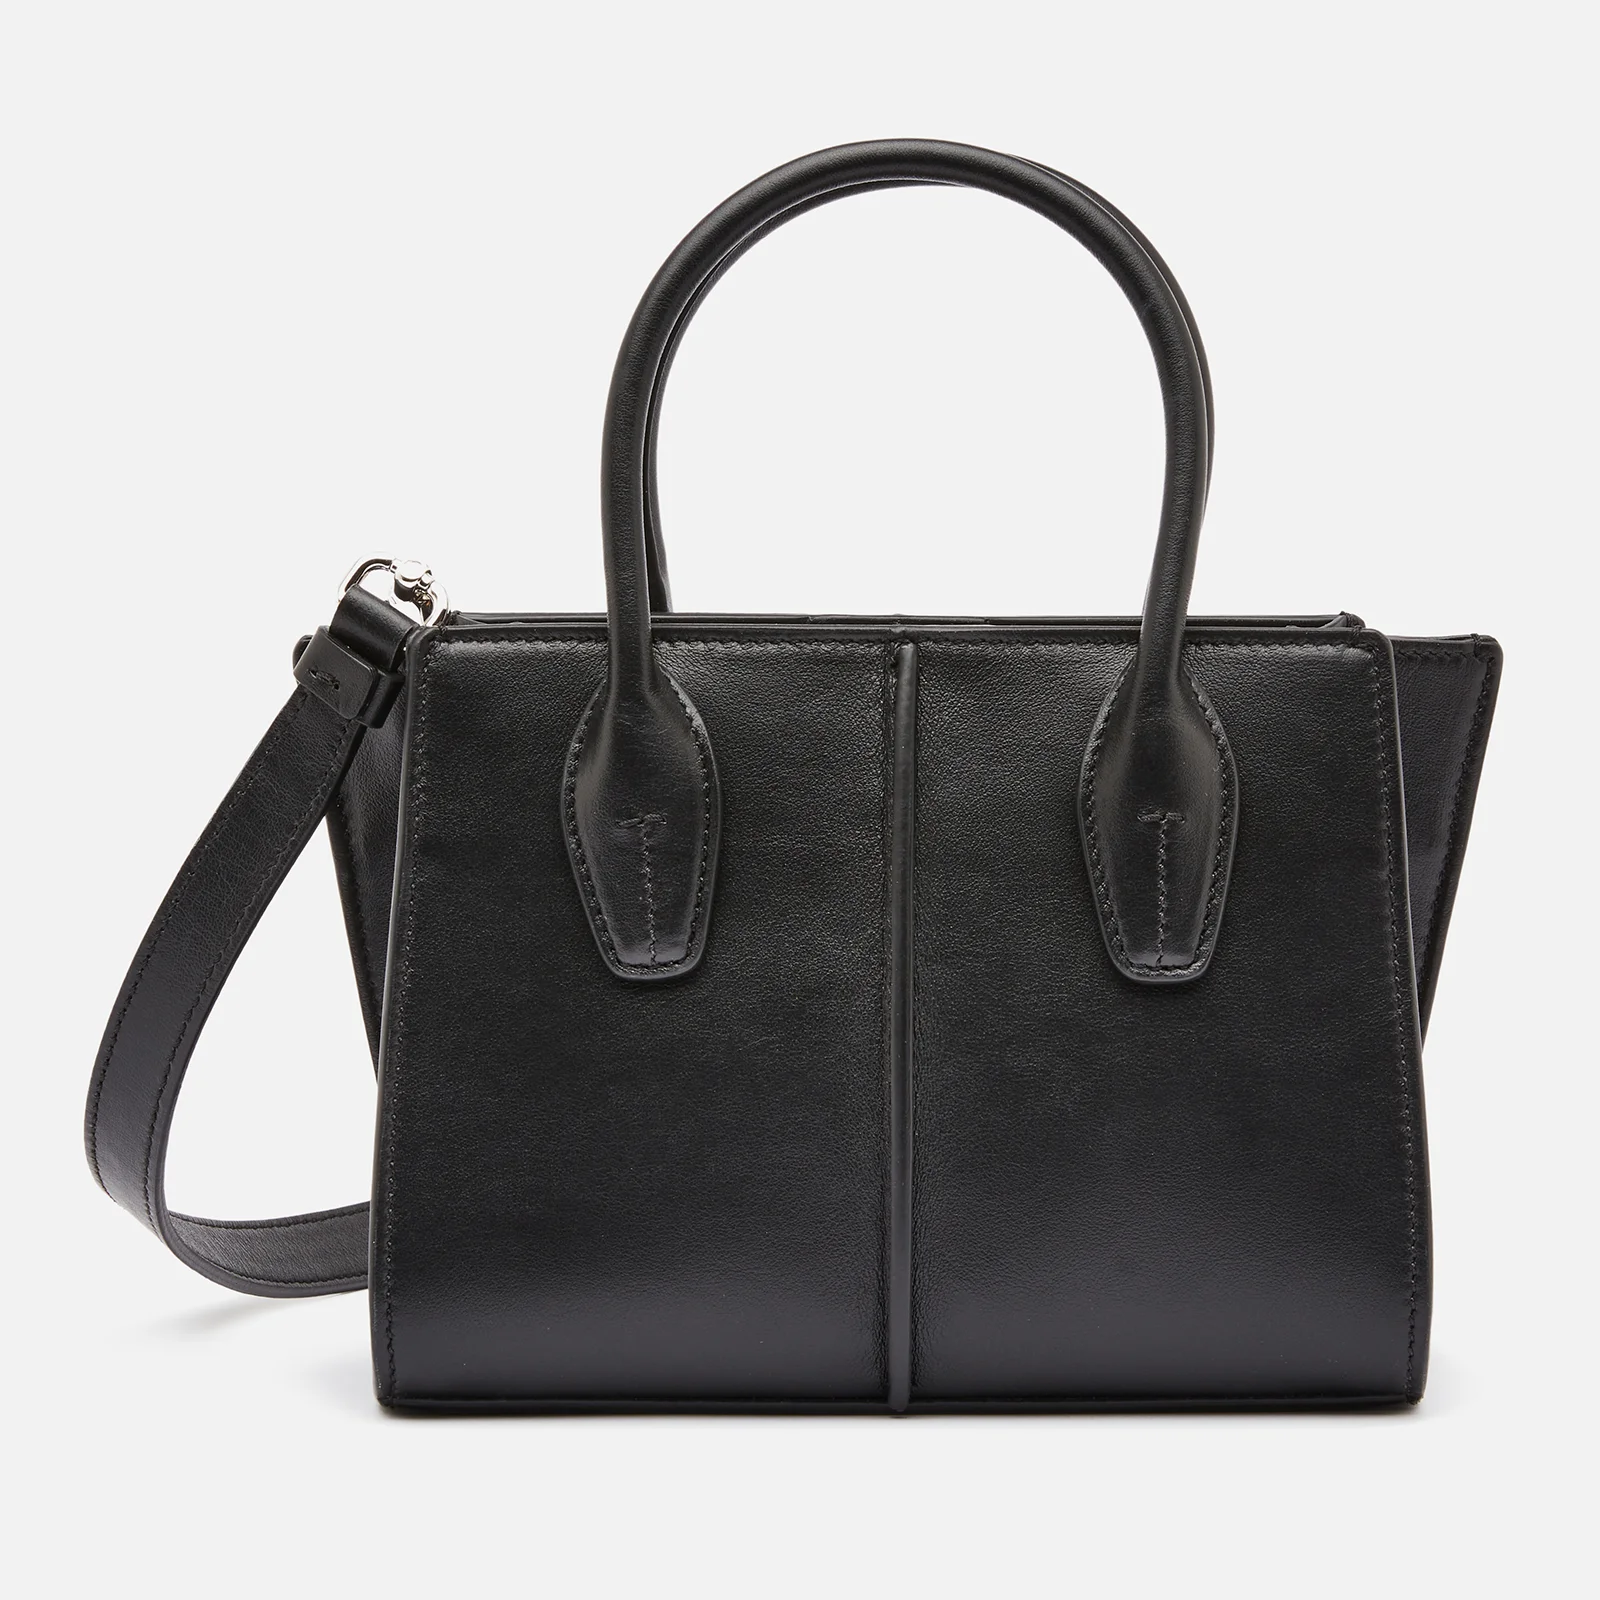 Tod's Women's Mini Shopping Tote Bag - Black Image 1